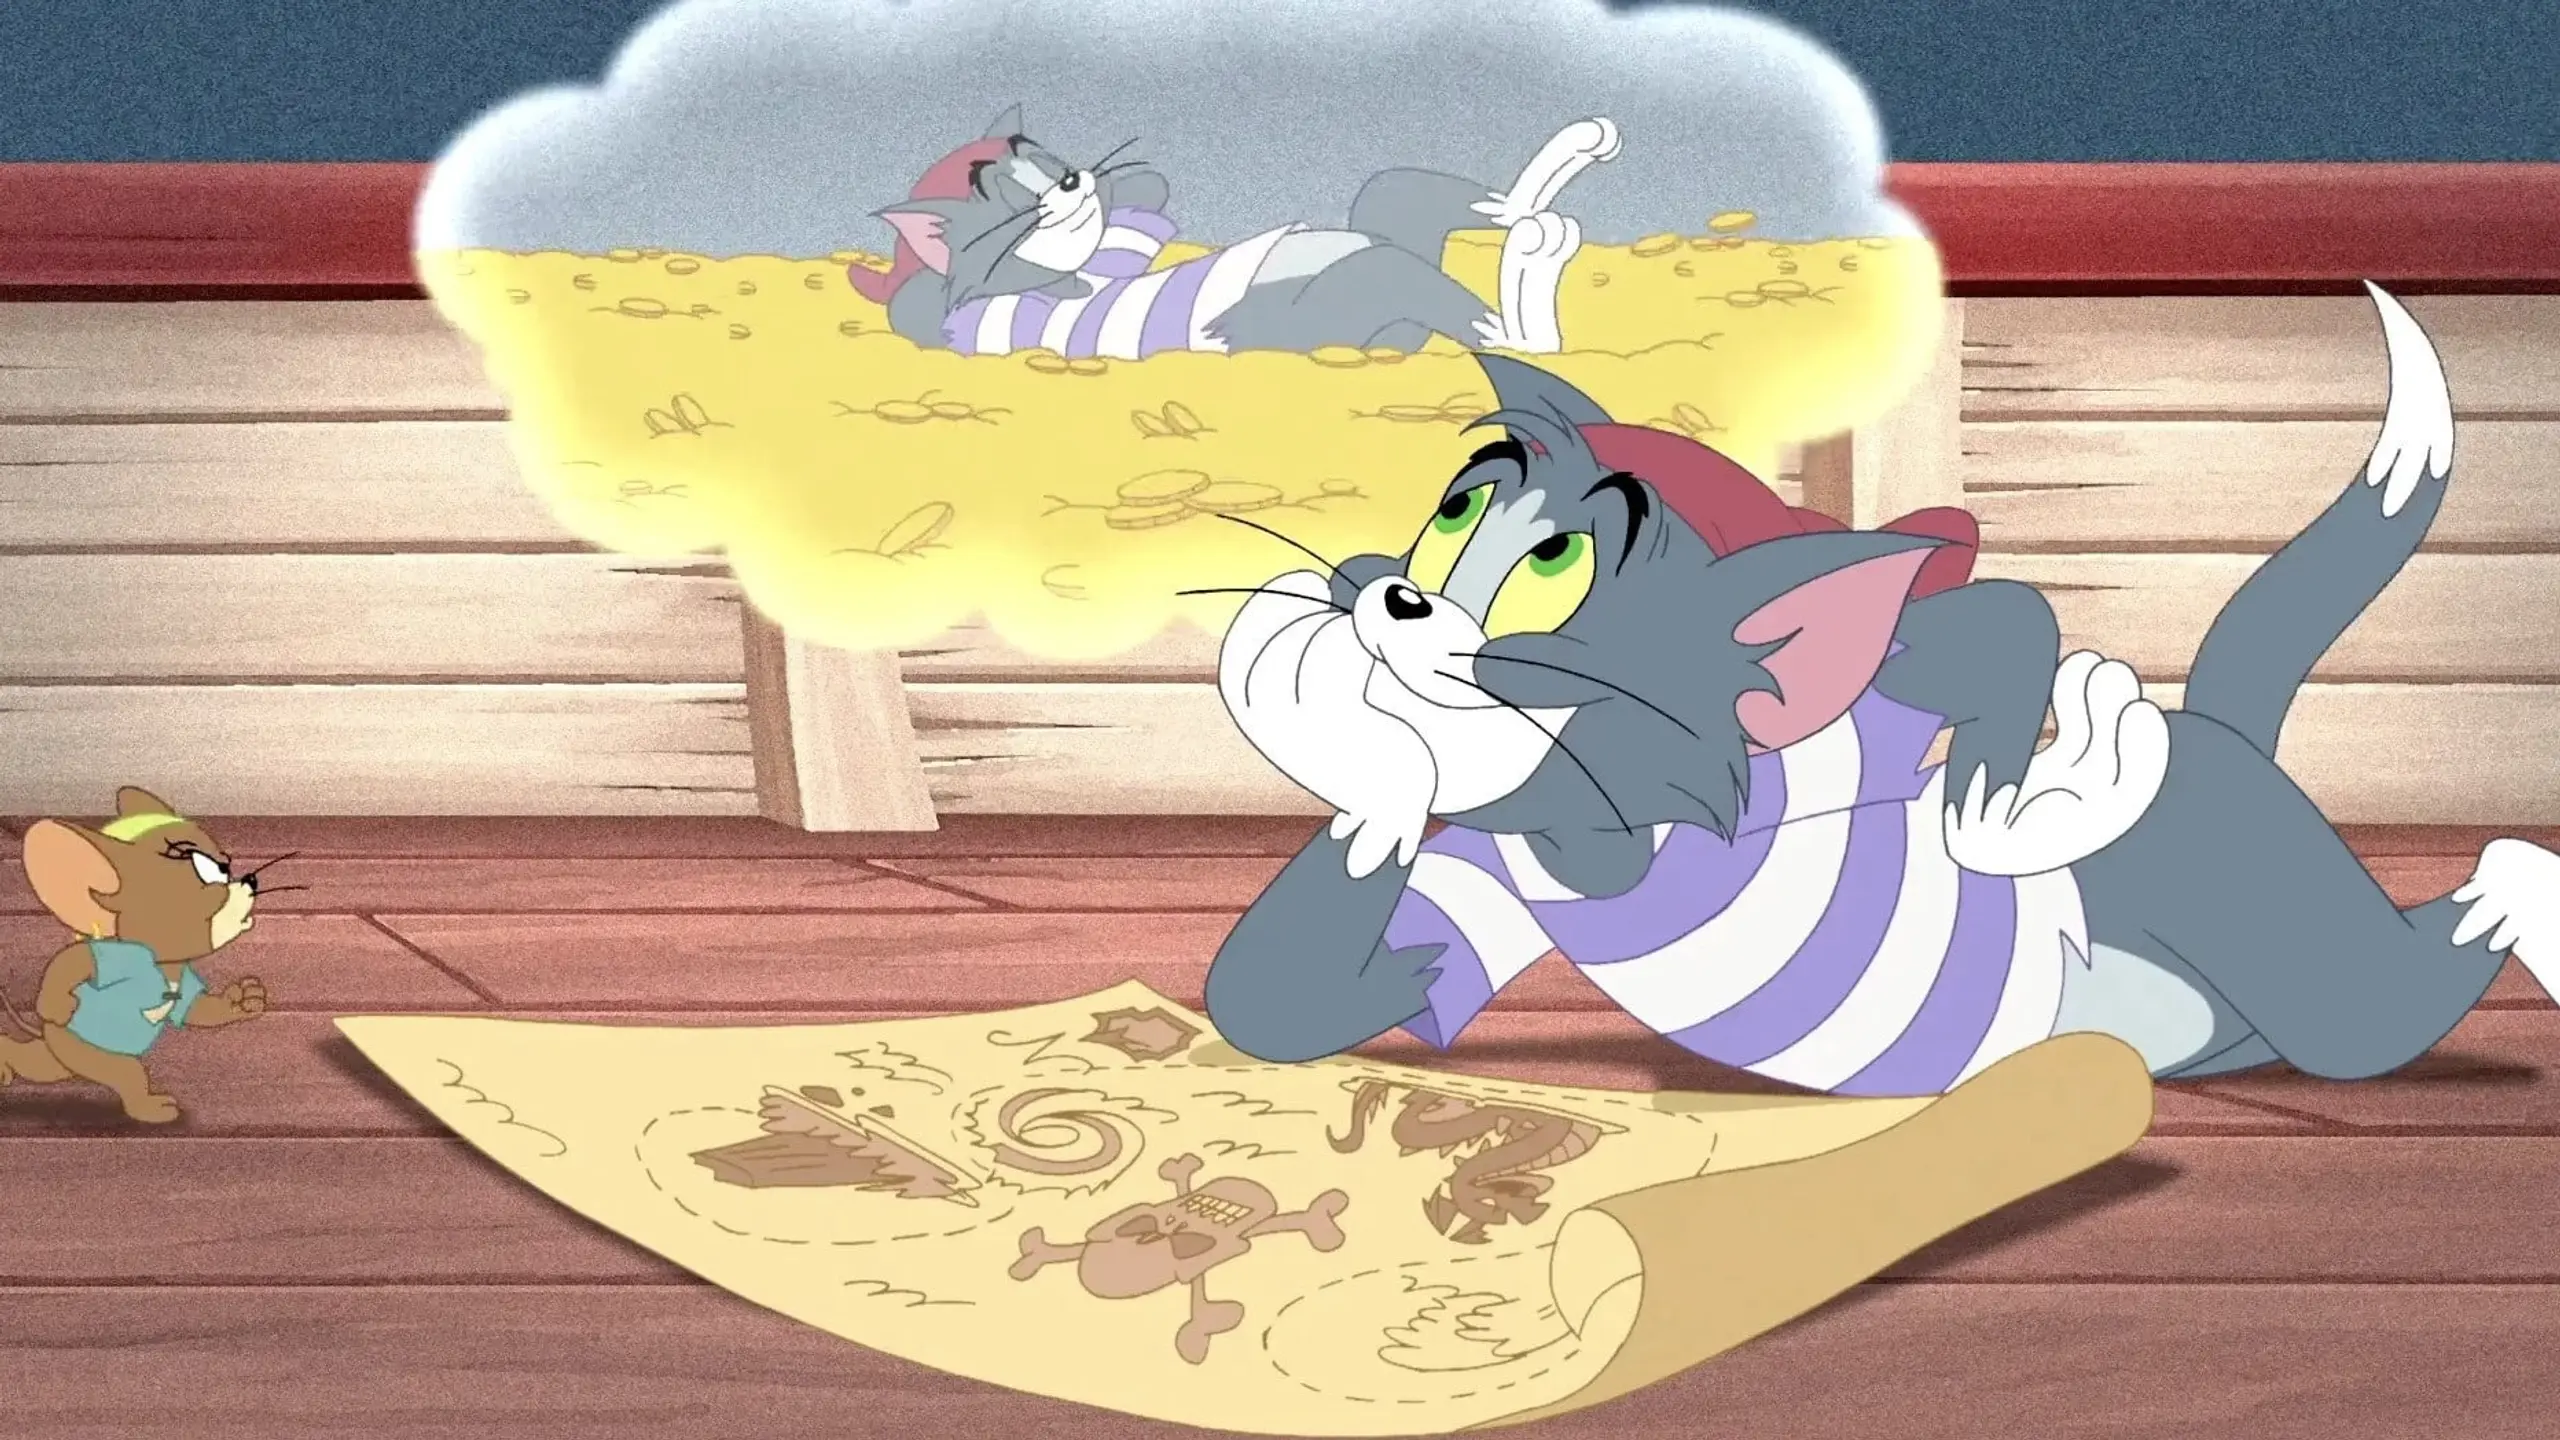 Tom und Jerry - Piraten auf Schatzsuche